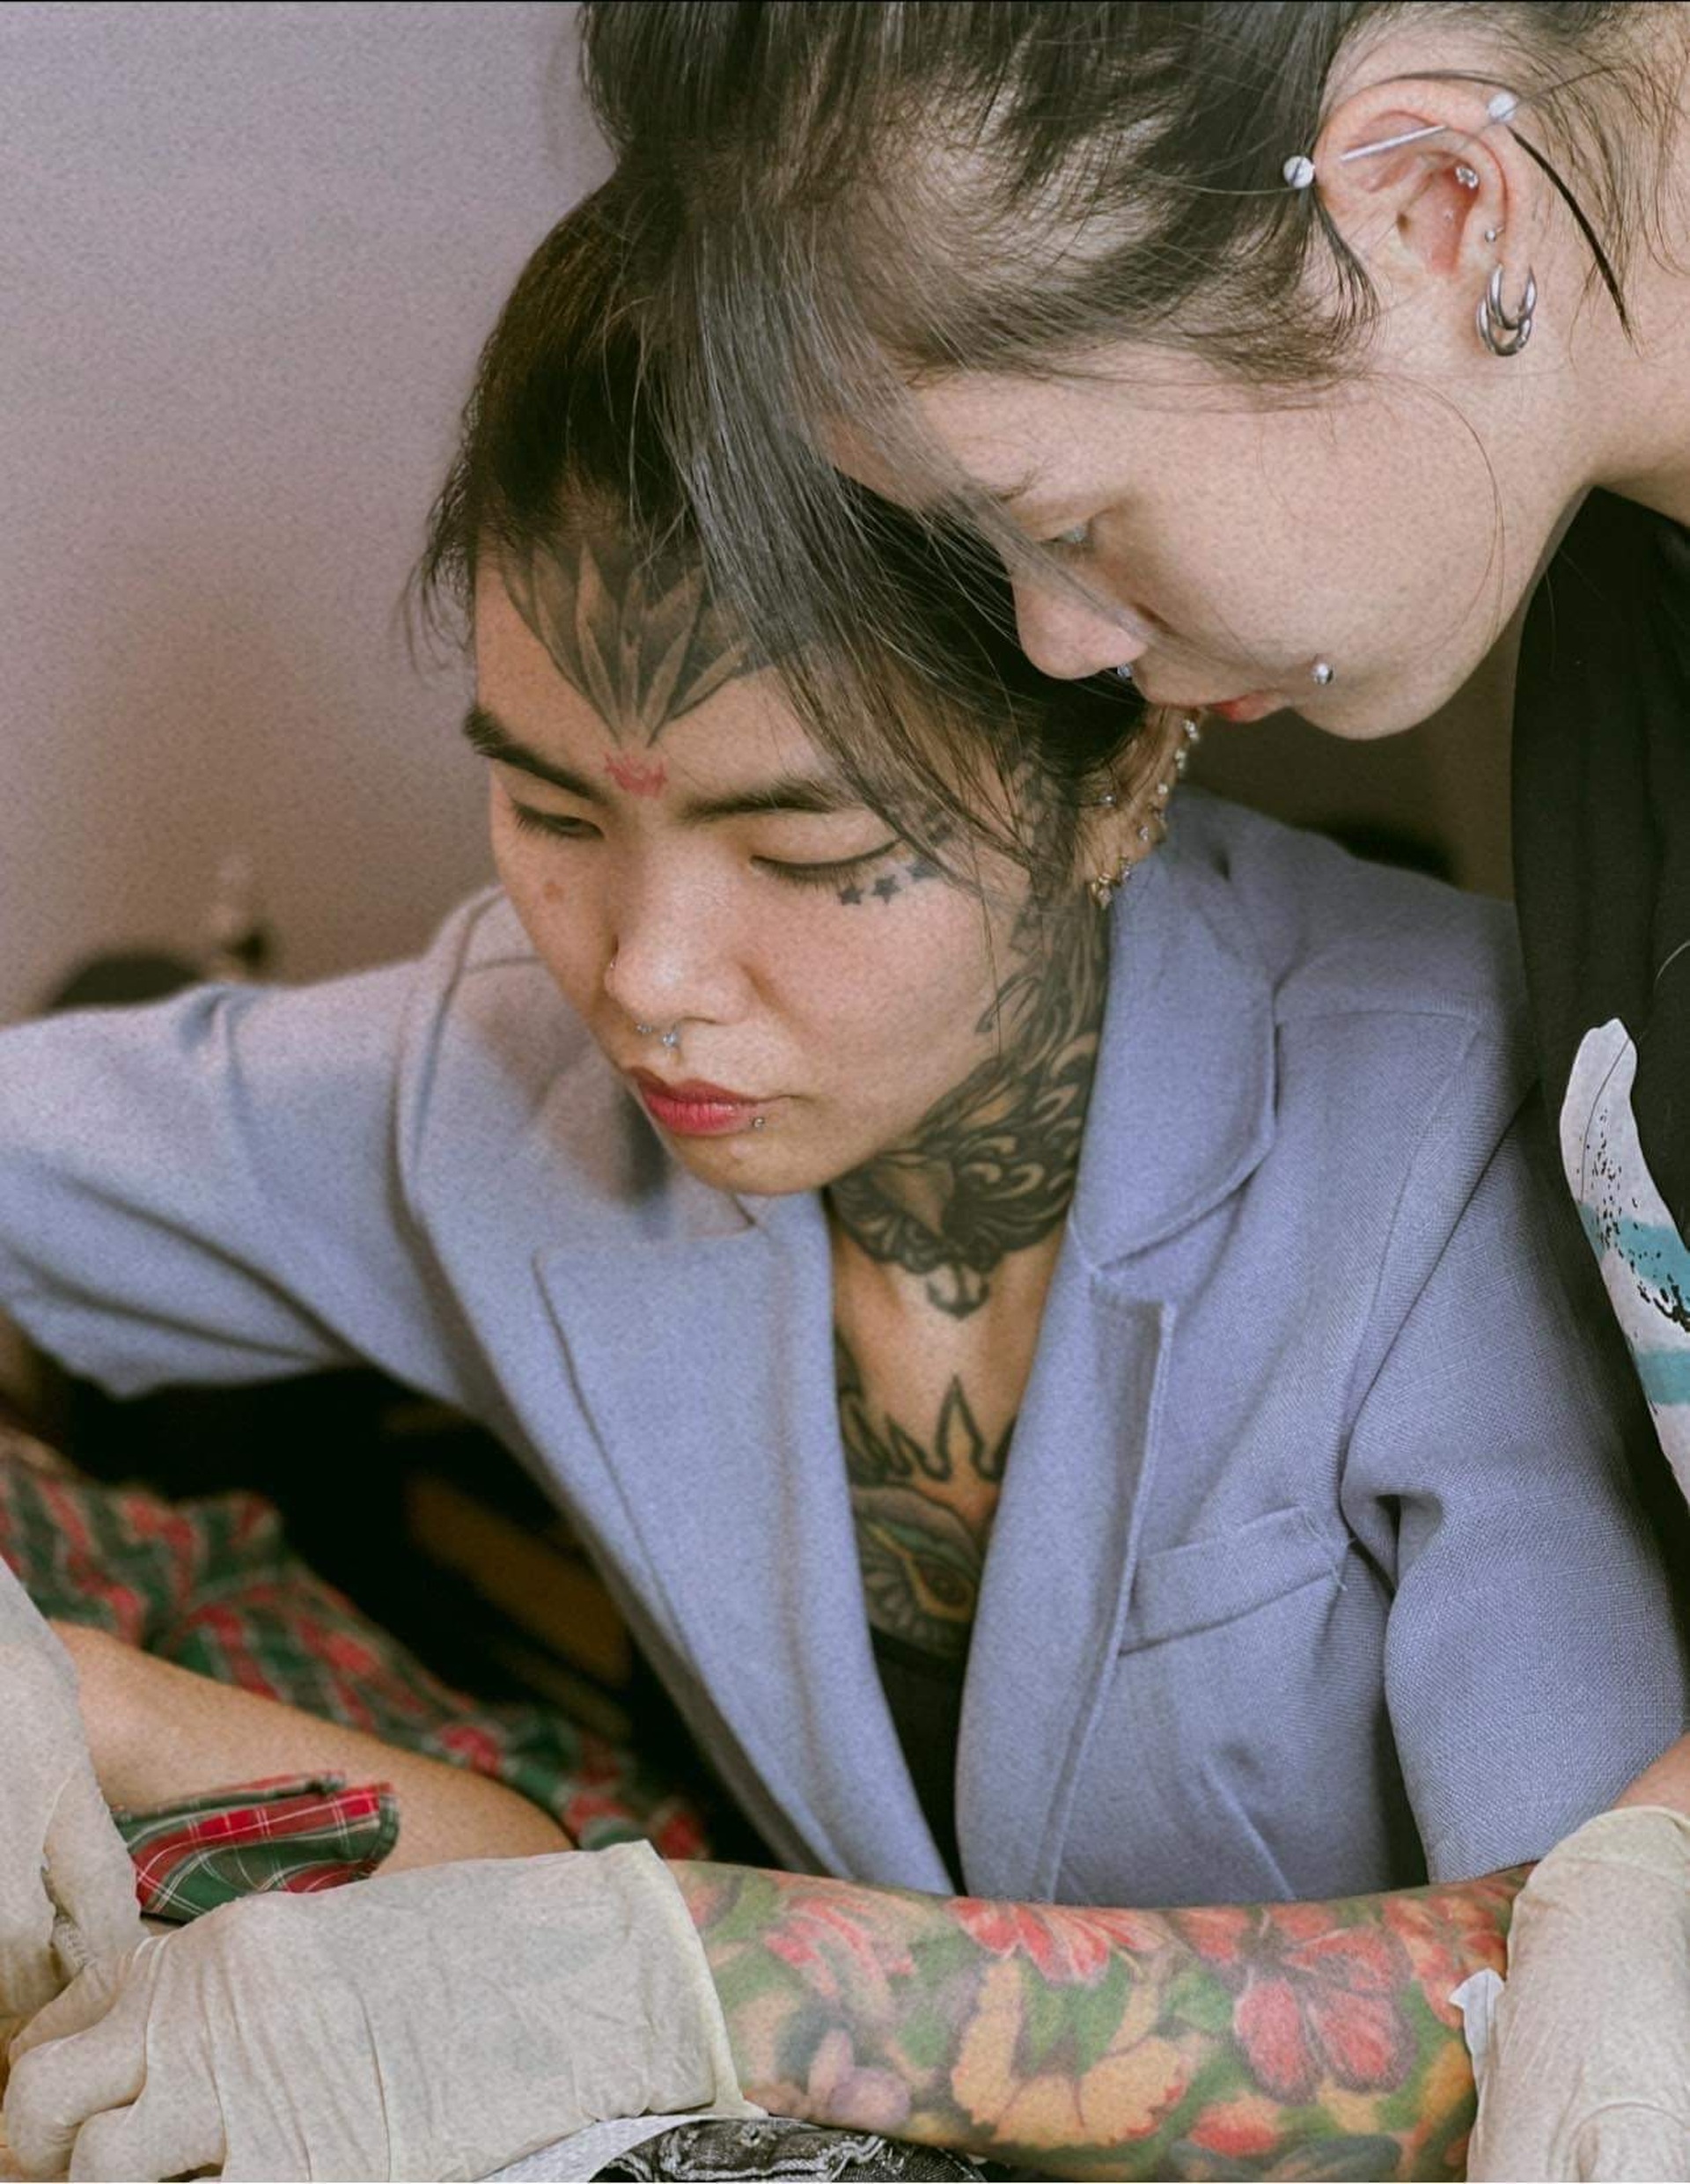 Thợ nữ xăm nổi tiếng Việt Nam kể chuyện làm đẹp vùng kín cho đàn ông - Ảnh 6.